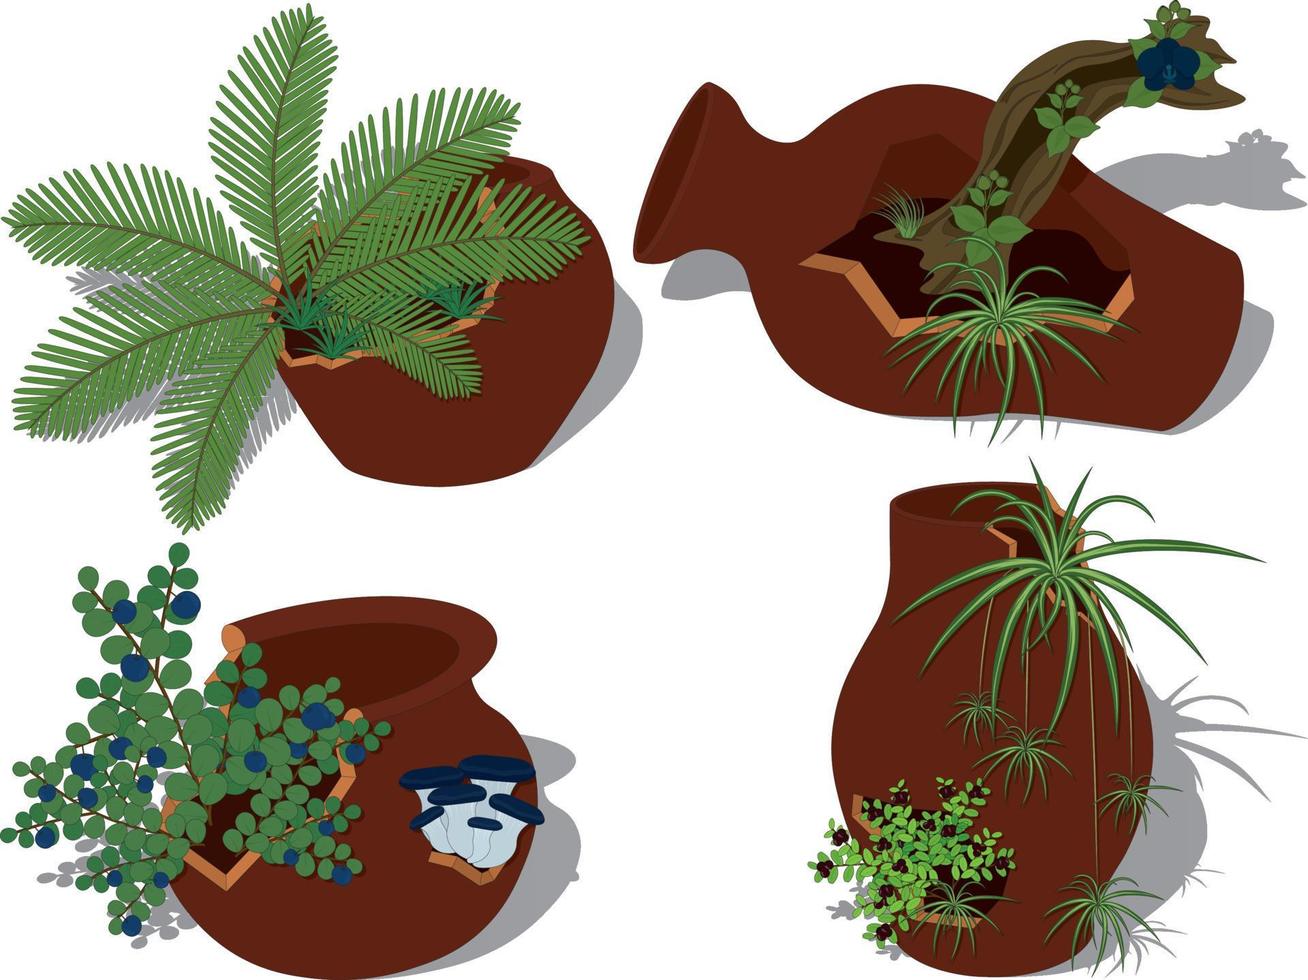 krukväxter samling, växter i spruckna trasiga krukor vektorillustration vektor